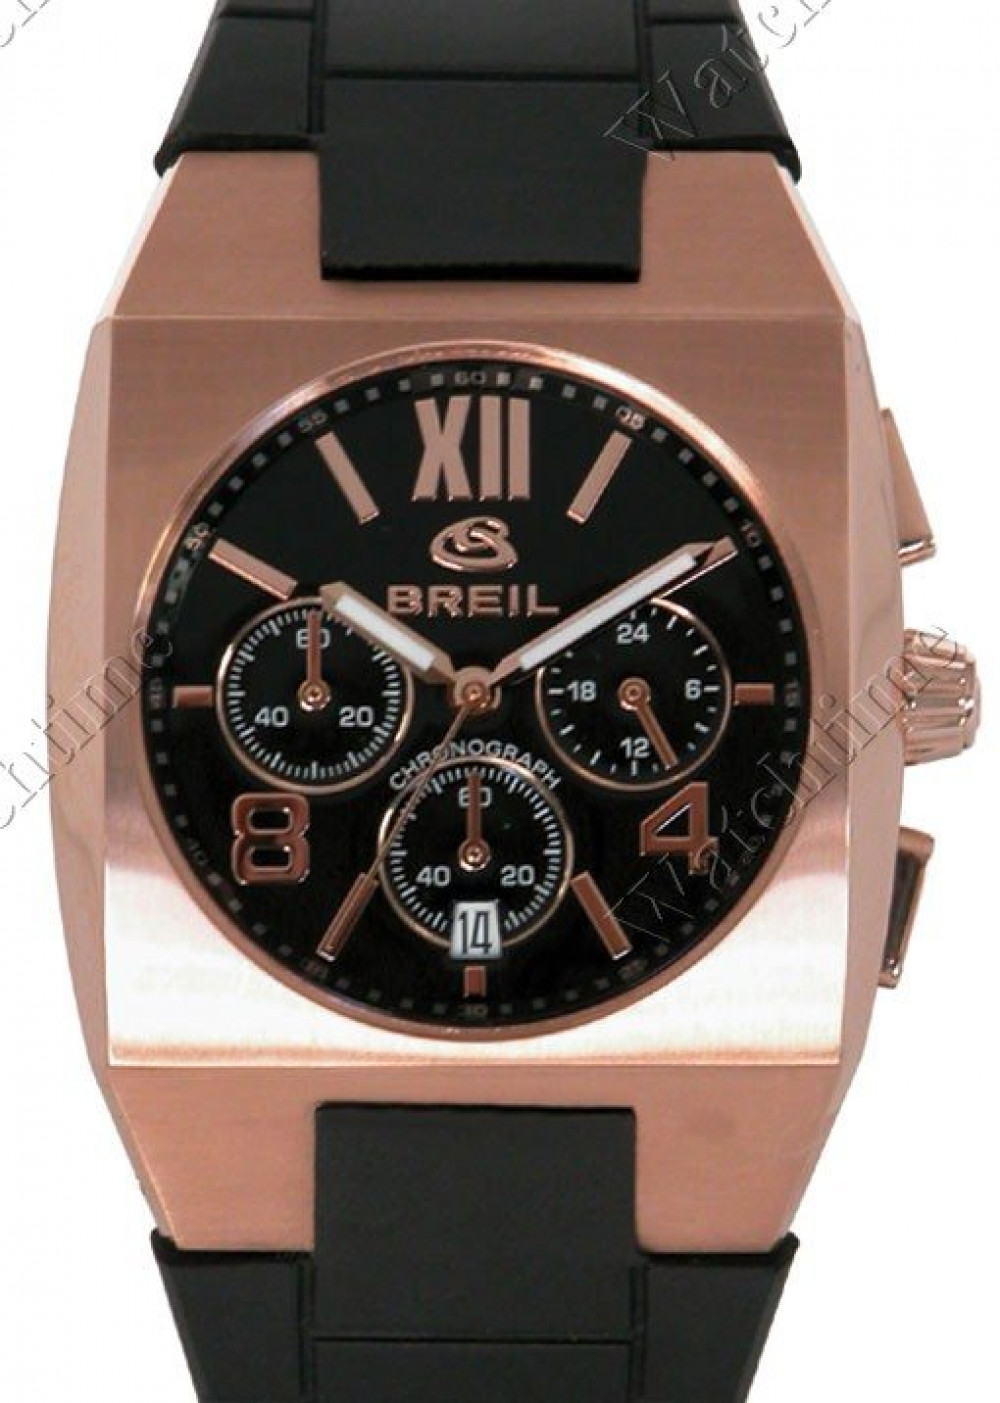 Zegarek firmy Breil, model Kult